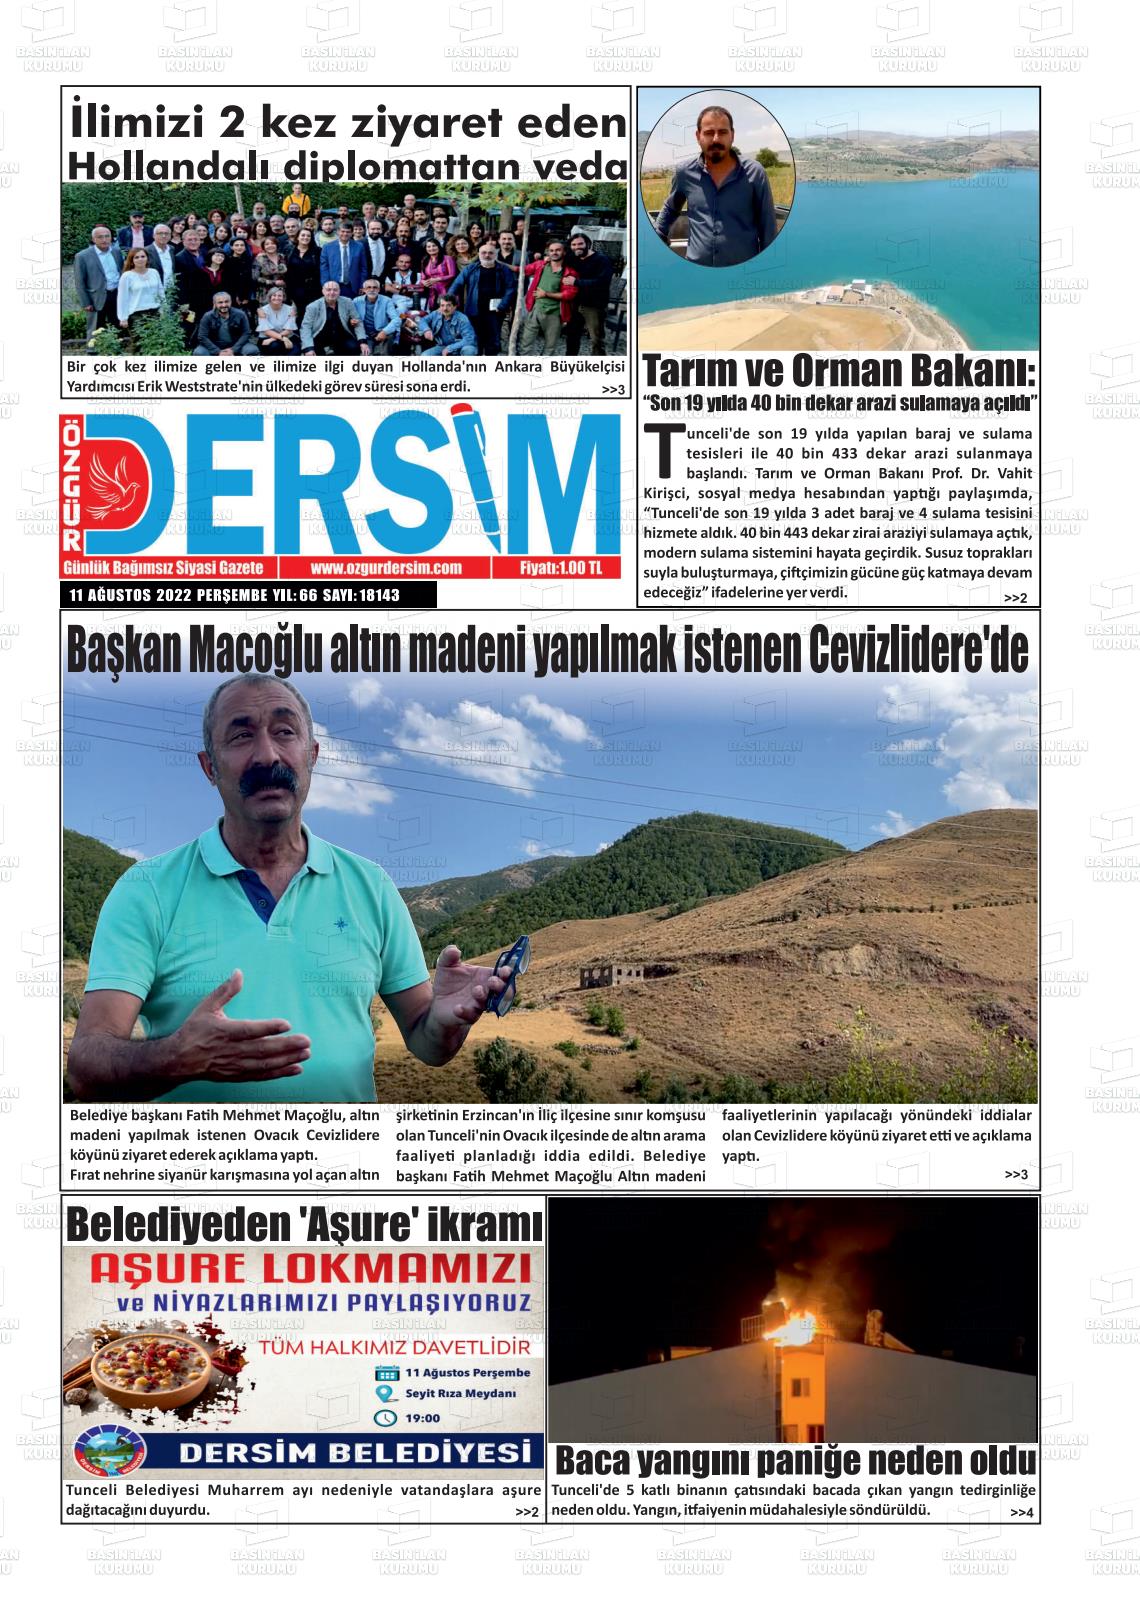 11 Ağustos 2022 Özgür Dersim Gazete Manşeti